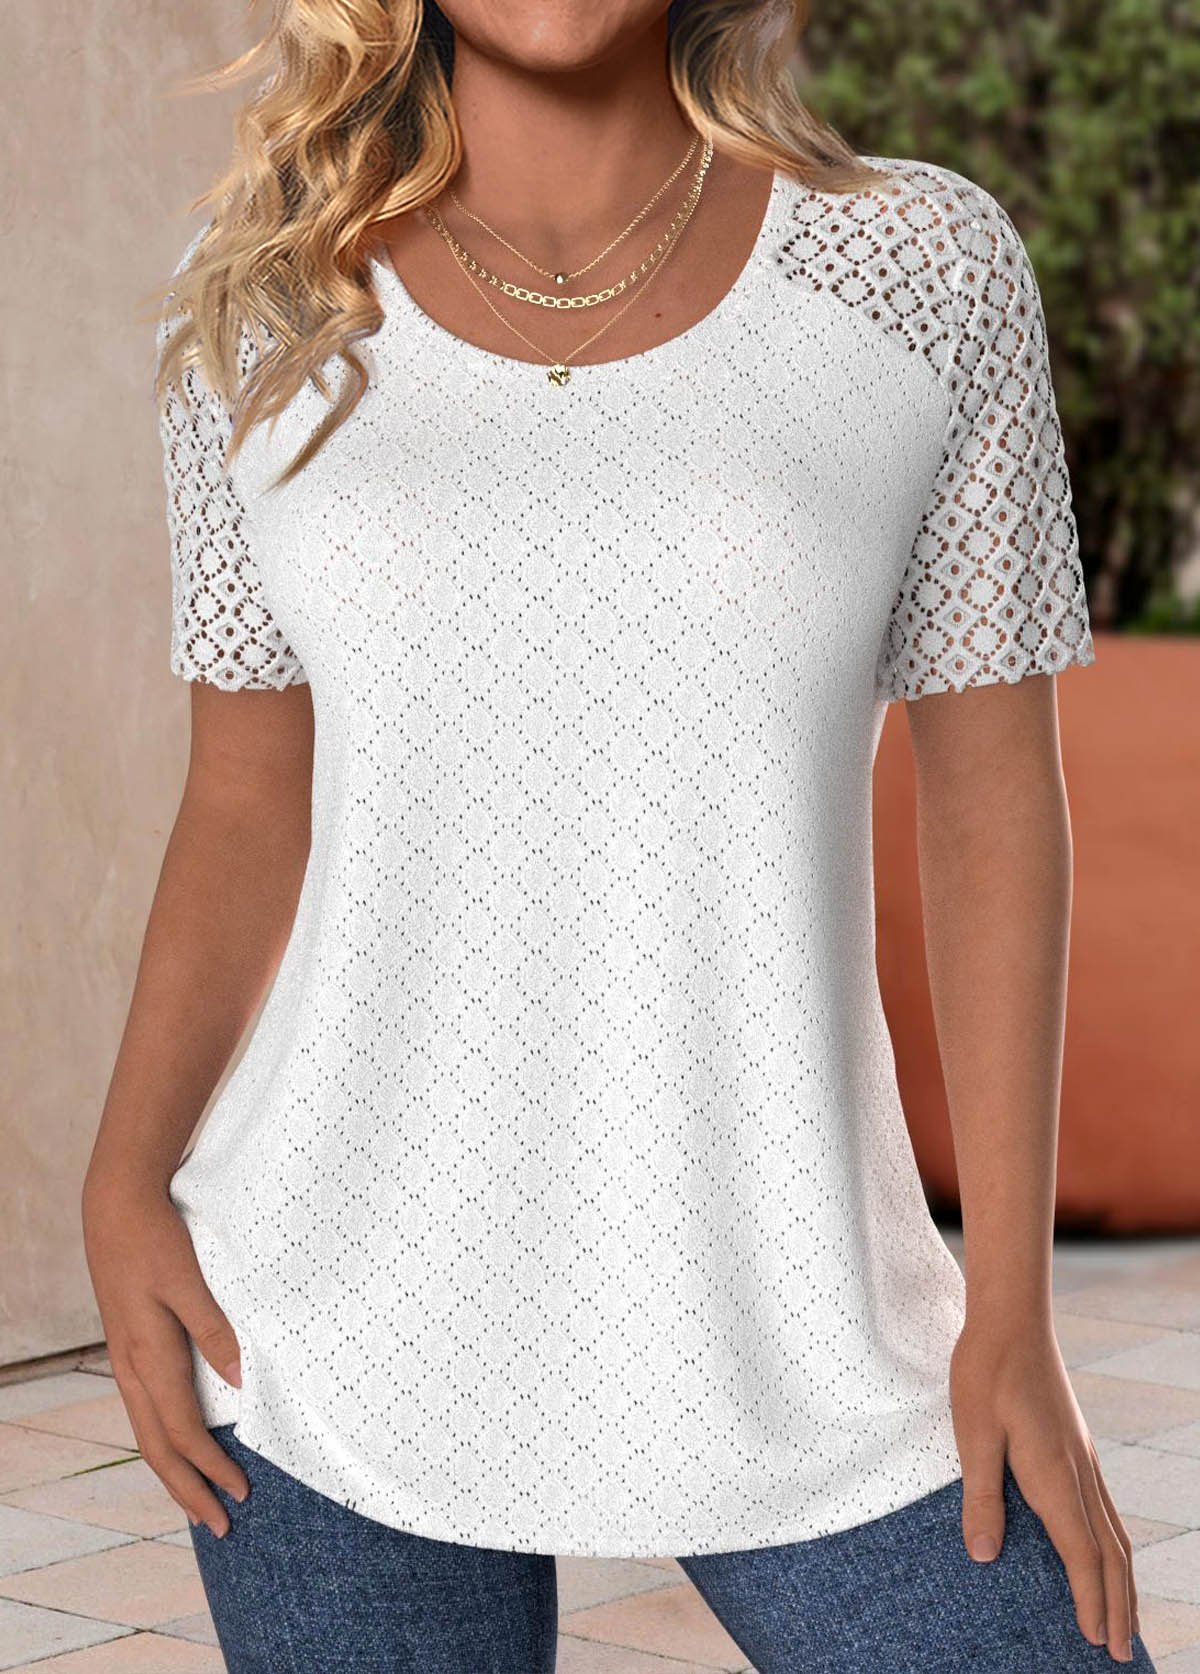 Lace White Short Sleeve Round Neck T Shirt